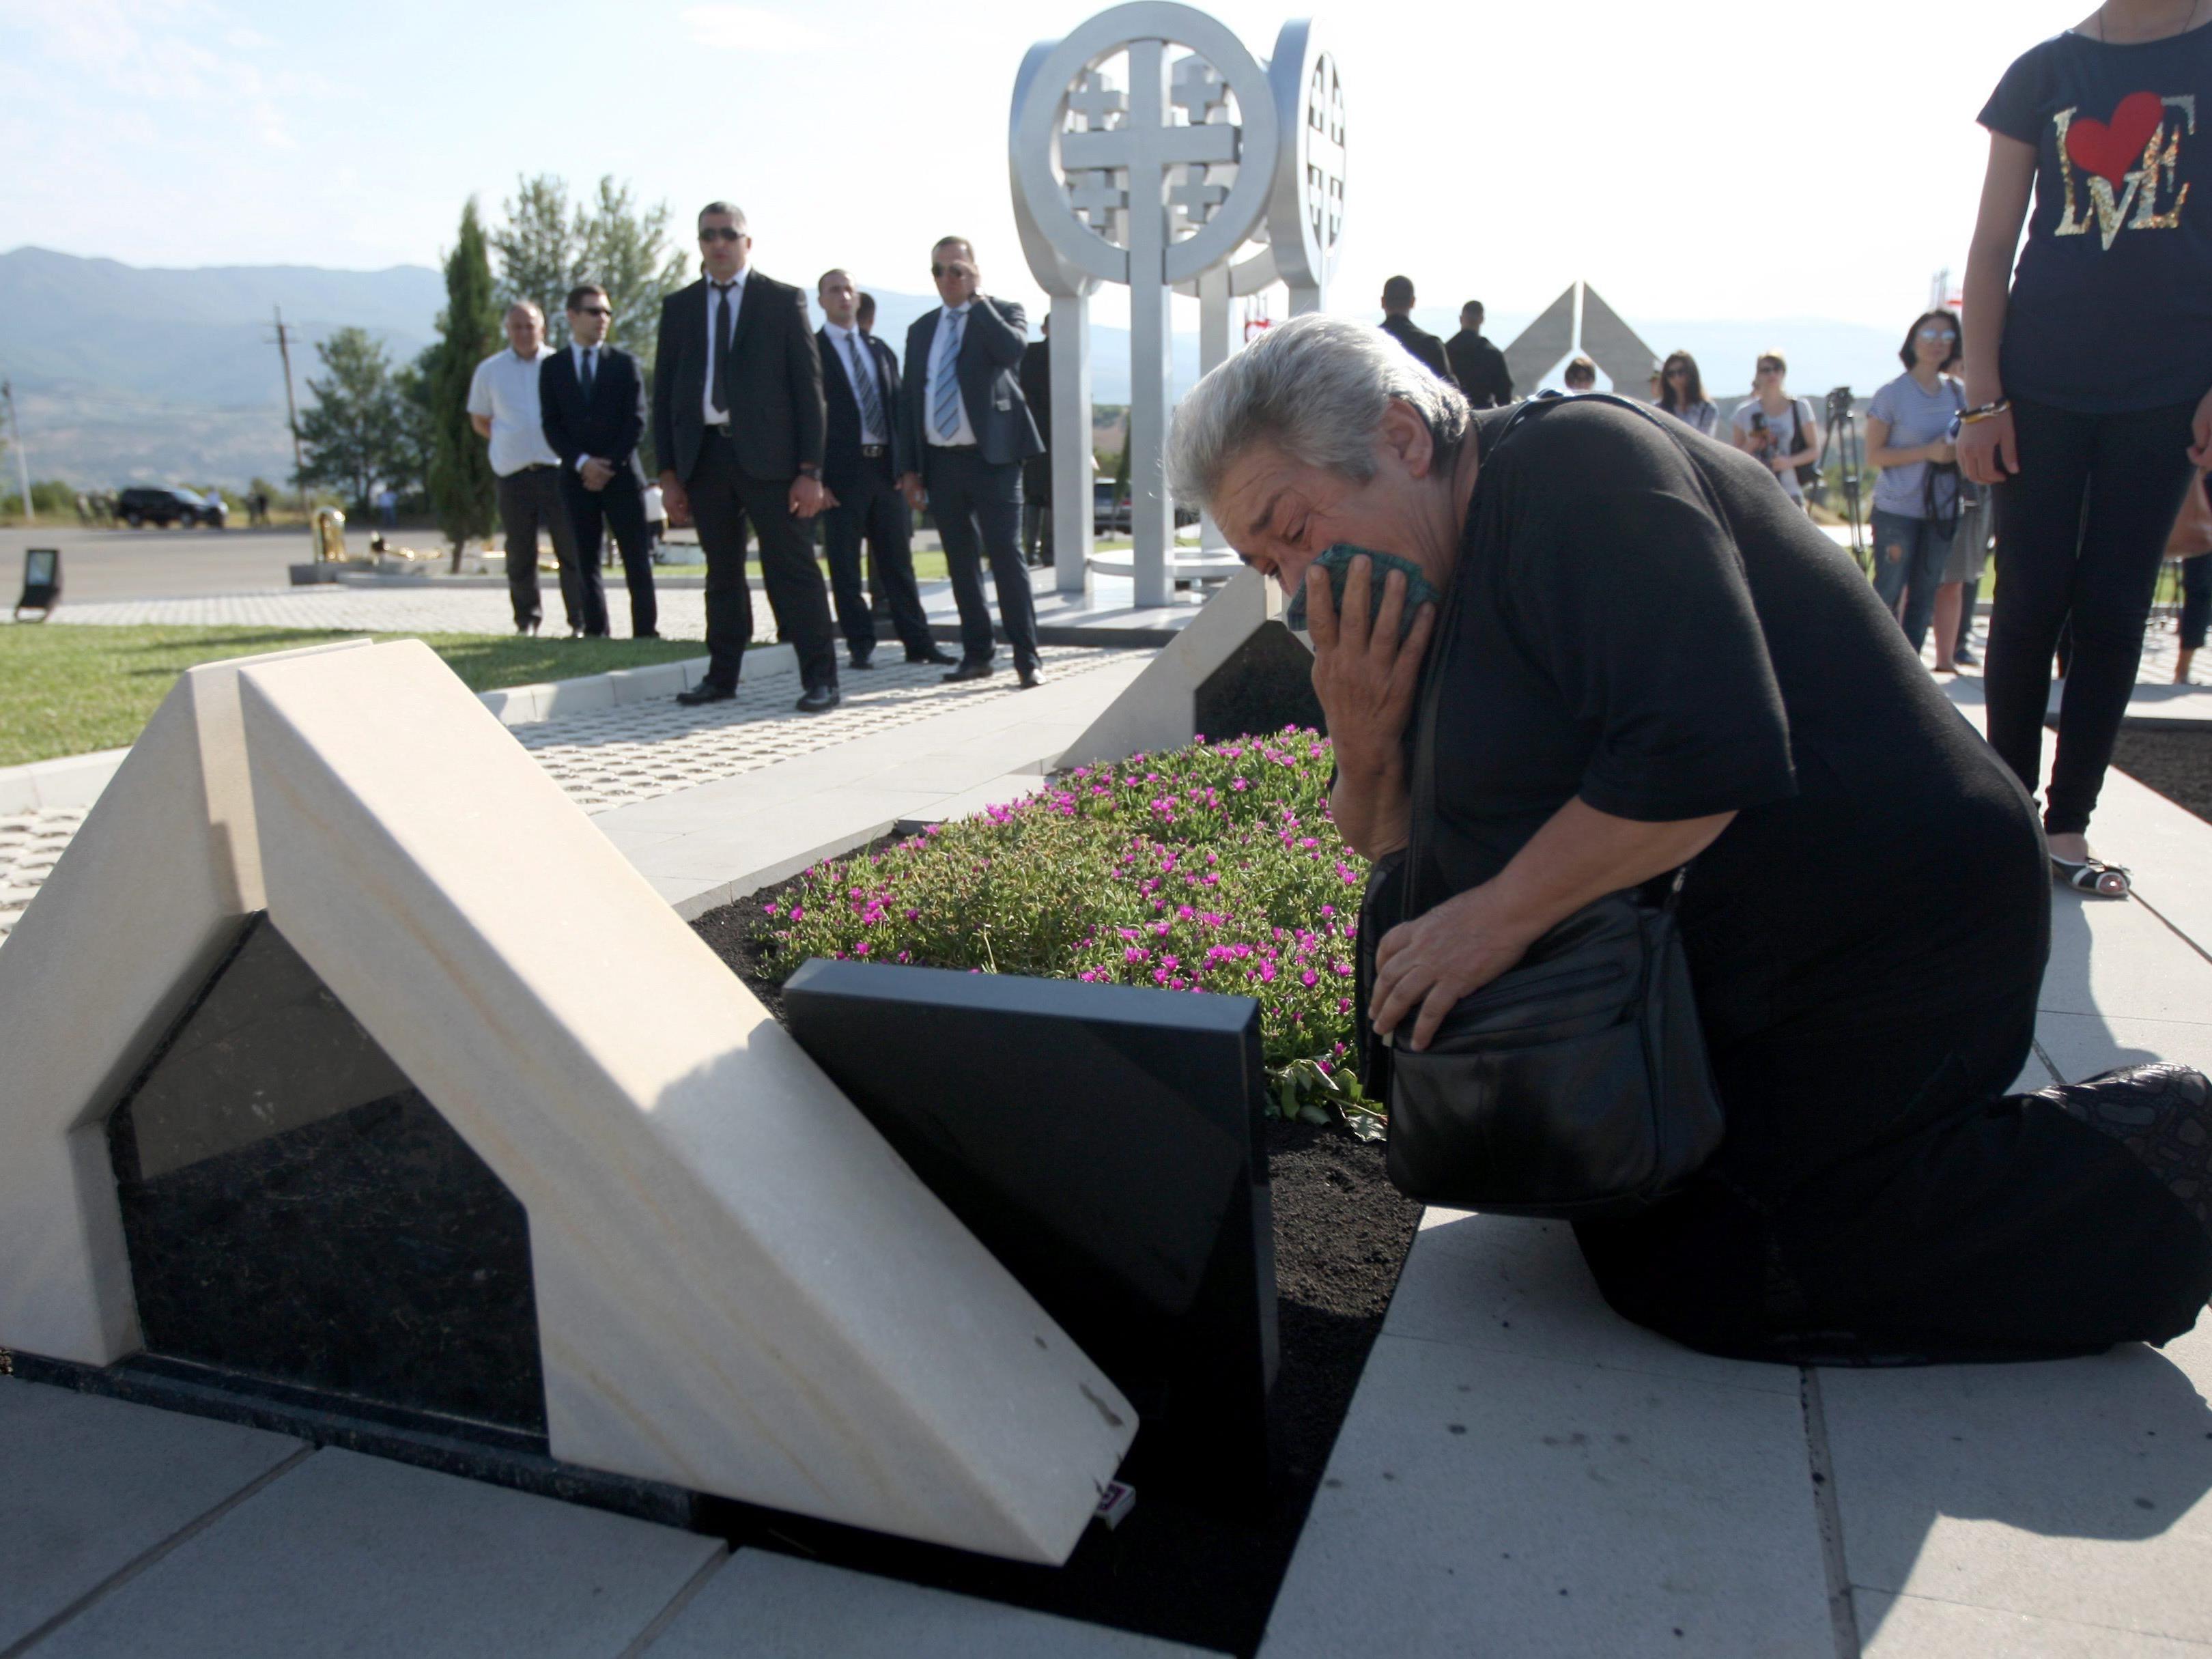 Georgien am 8. August 2014: Gedenken an Opfer des Kaukasuskrieges vor sechs Jahren.